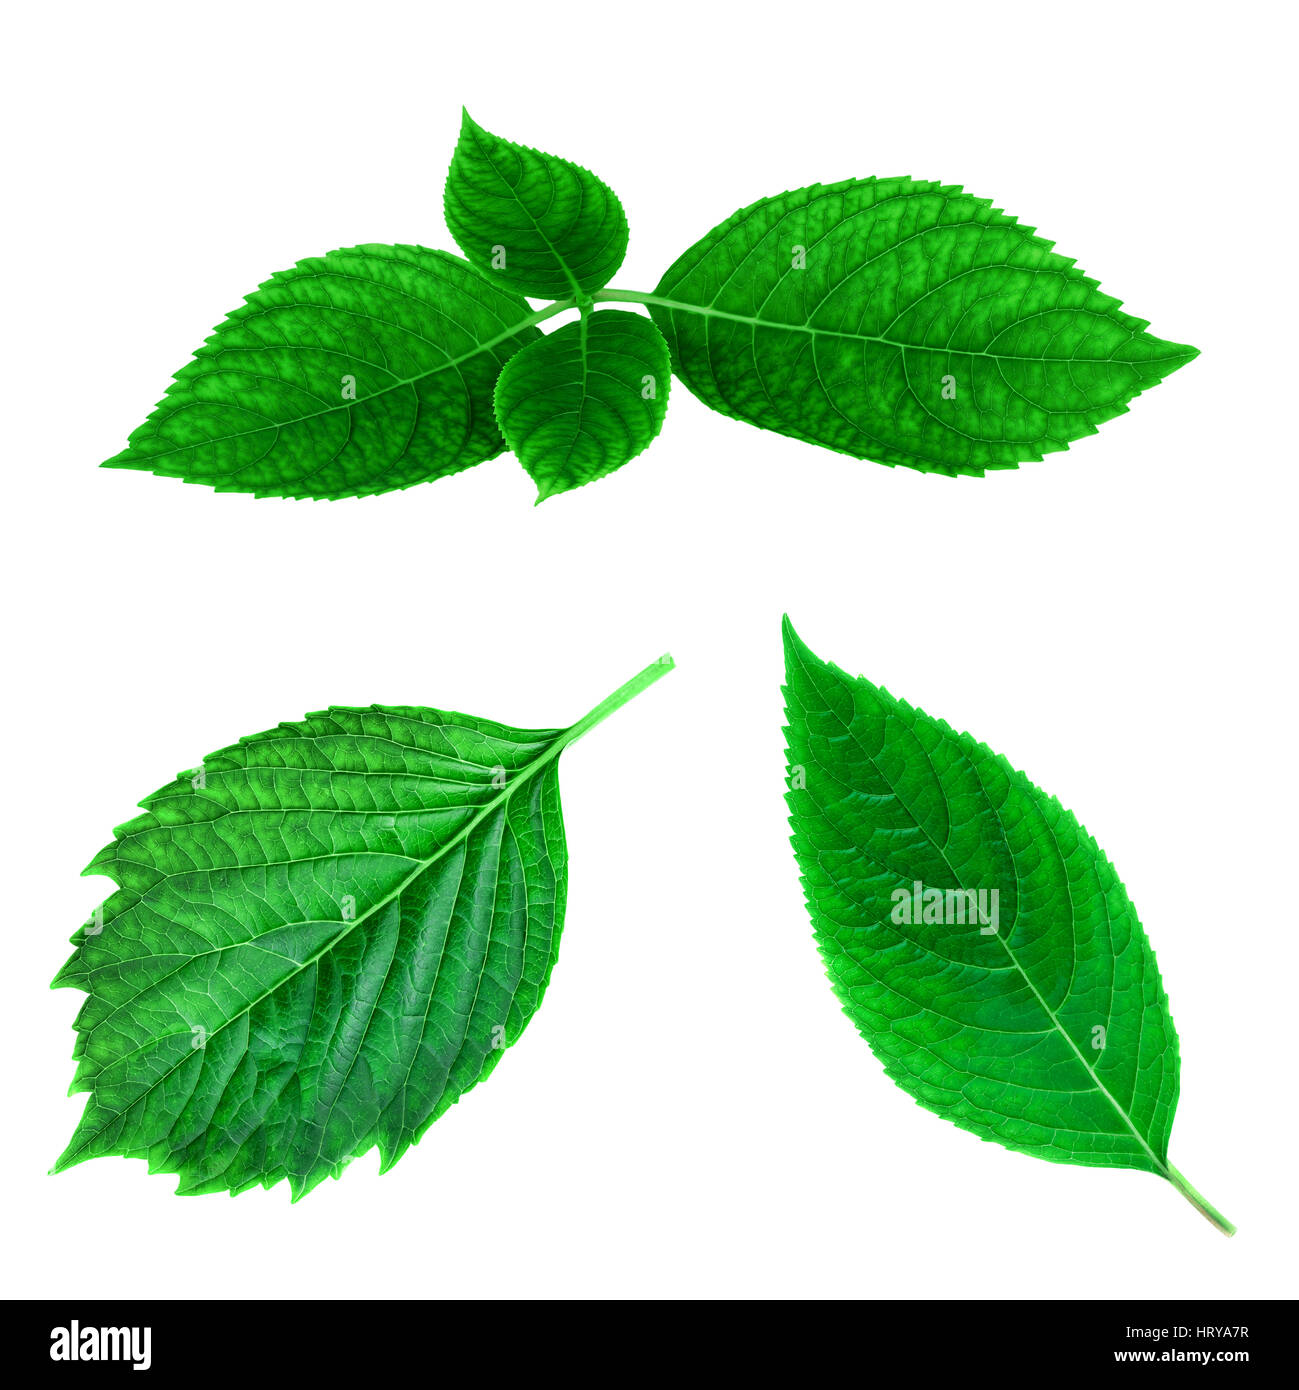 Foglia verde collezione primavera closeup leafs texture su sfondo bianco Foto Stock